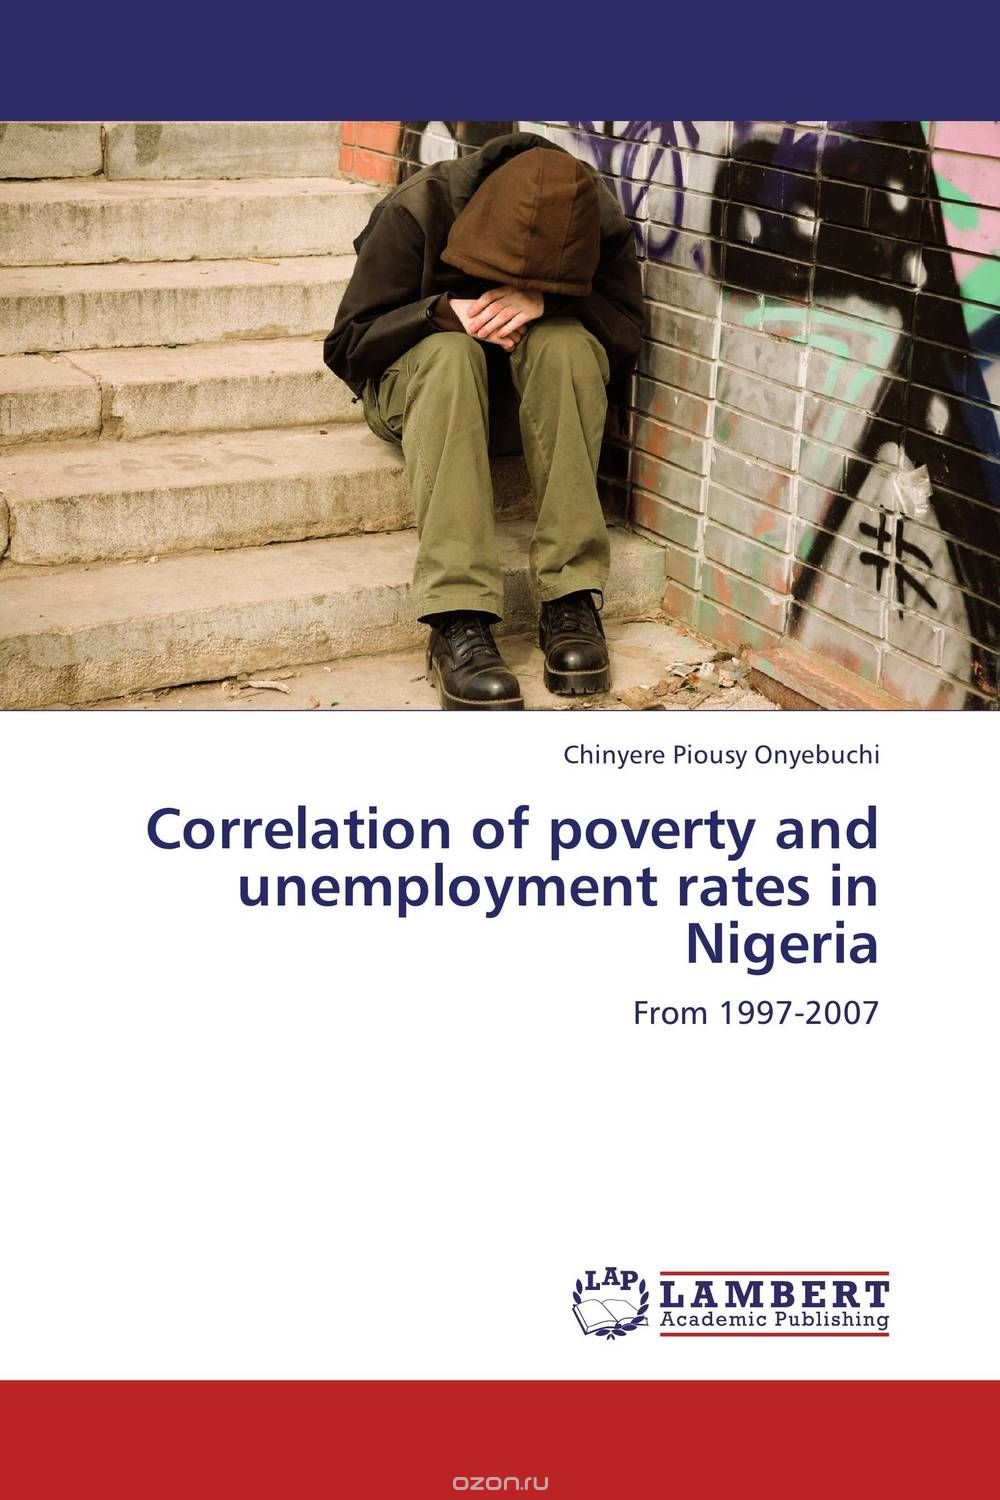 Скачать книгу "Correlation of poverty and unemployment rates in Nigeria"